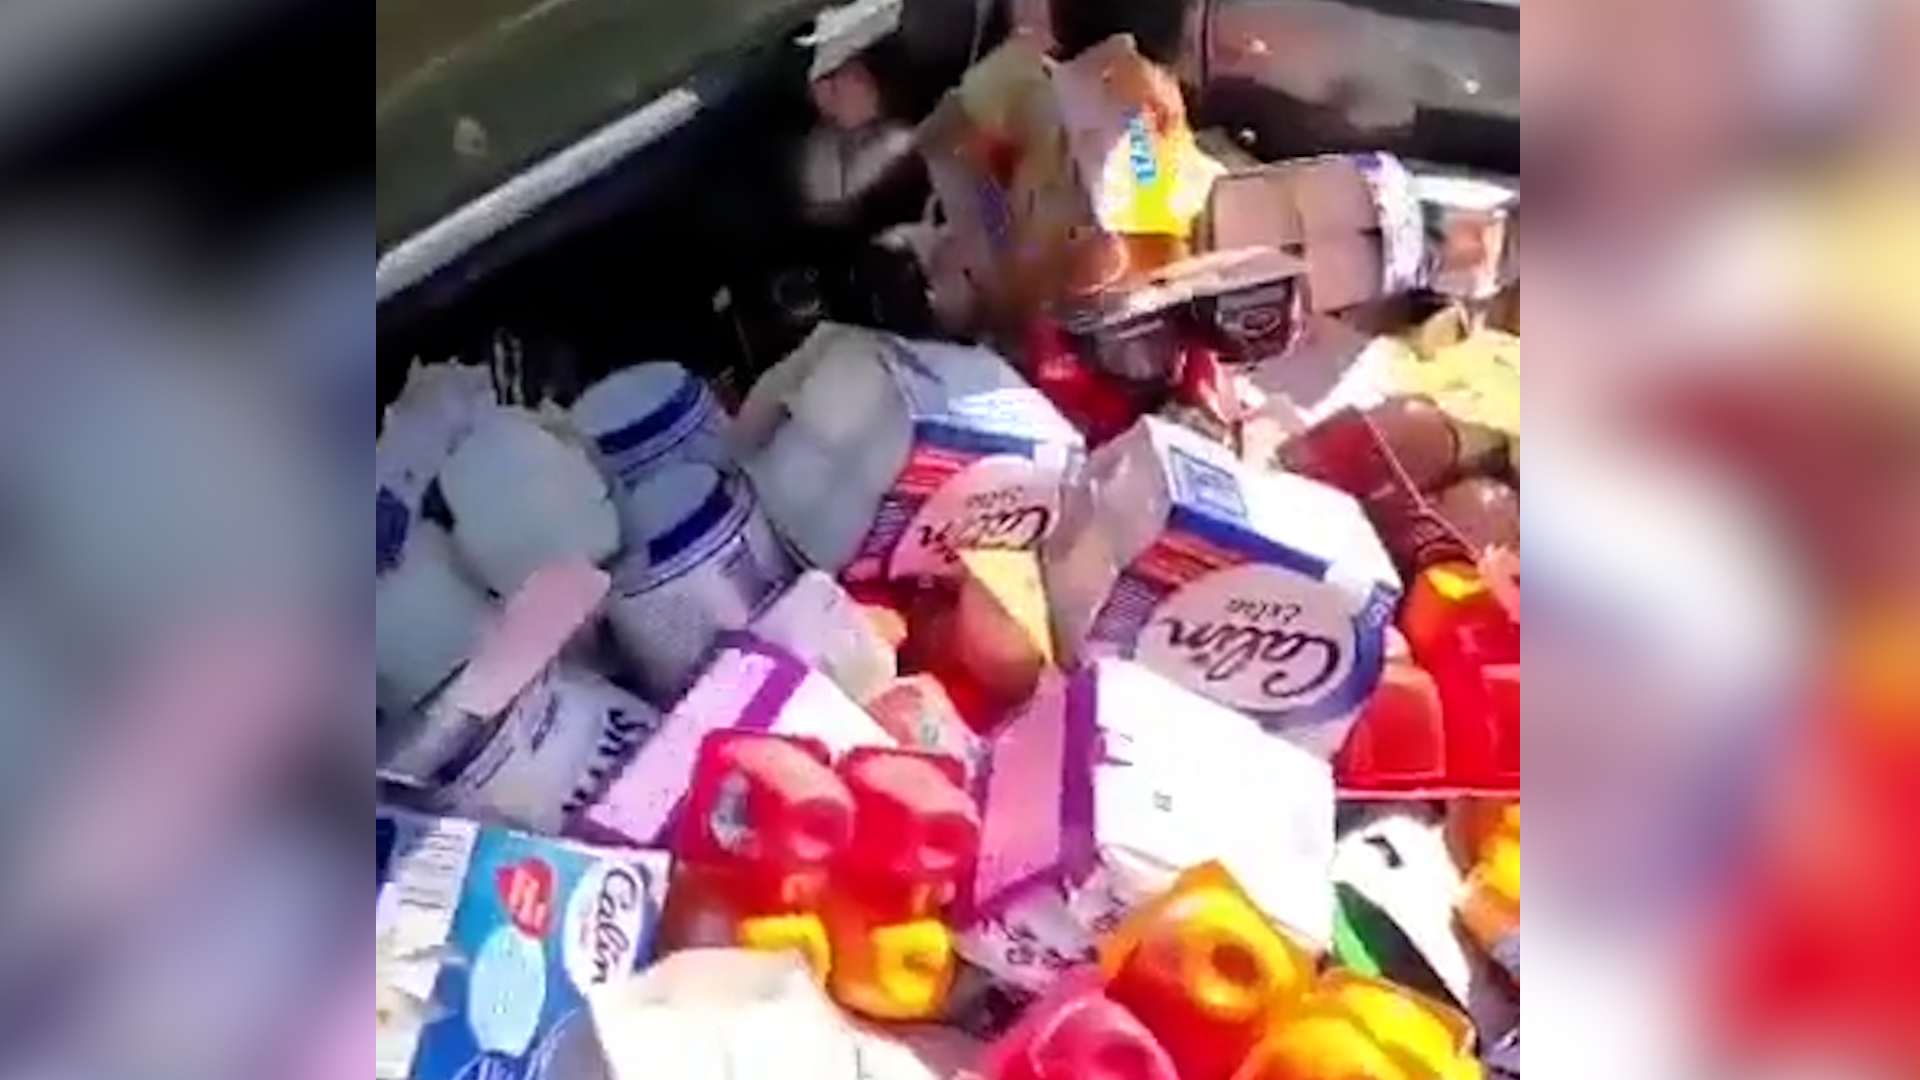 Miles de productos de un supermercado tirados a la basura.